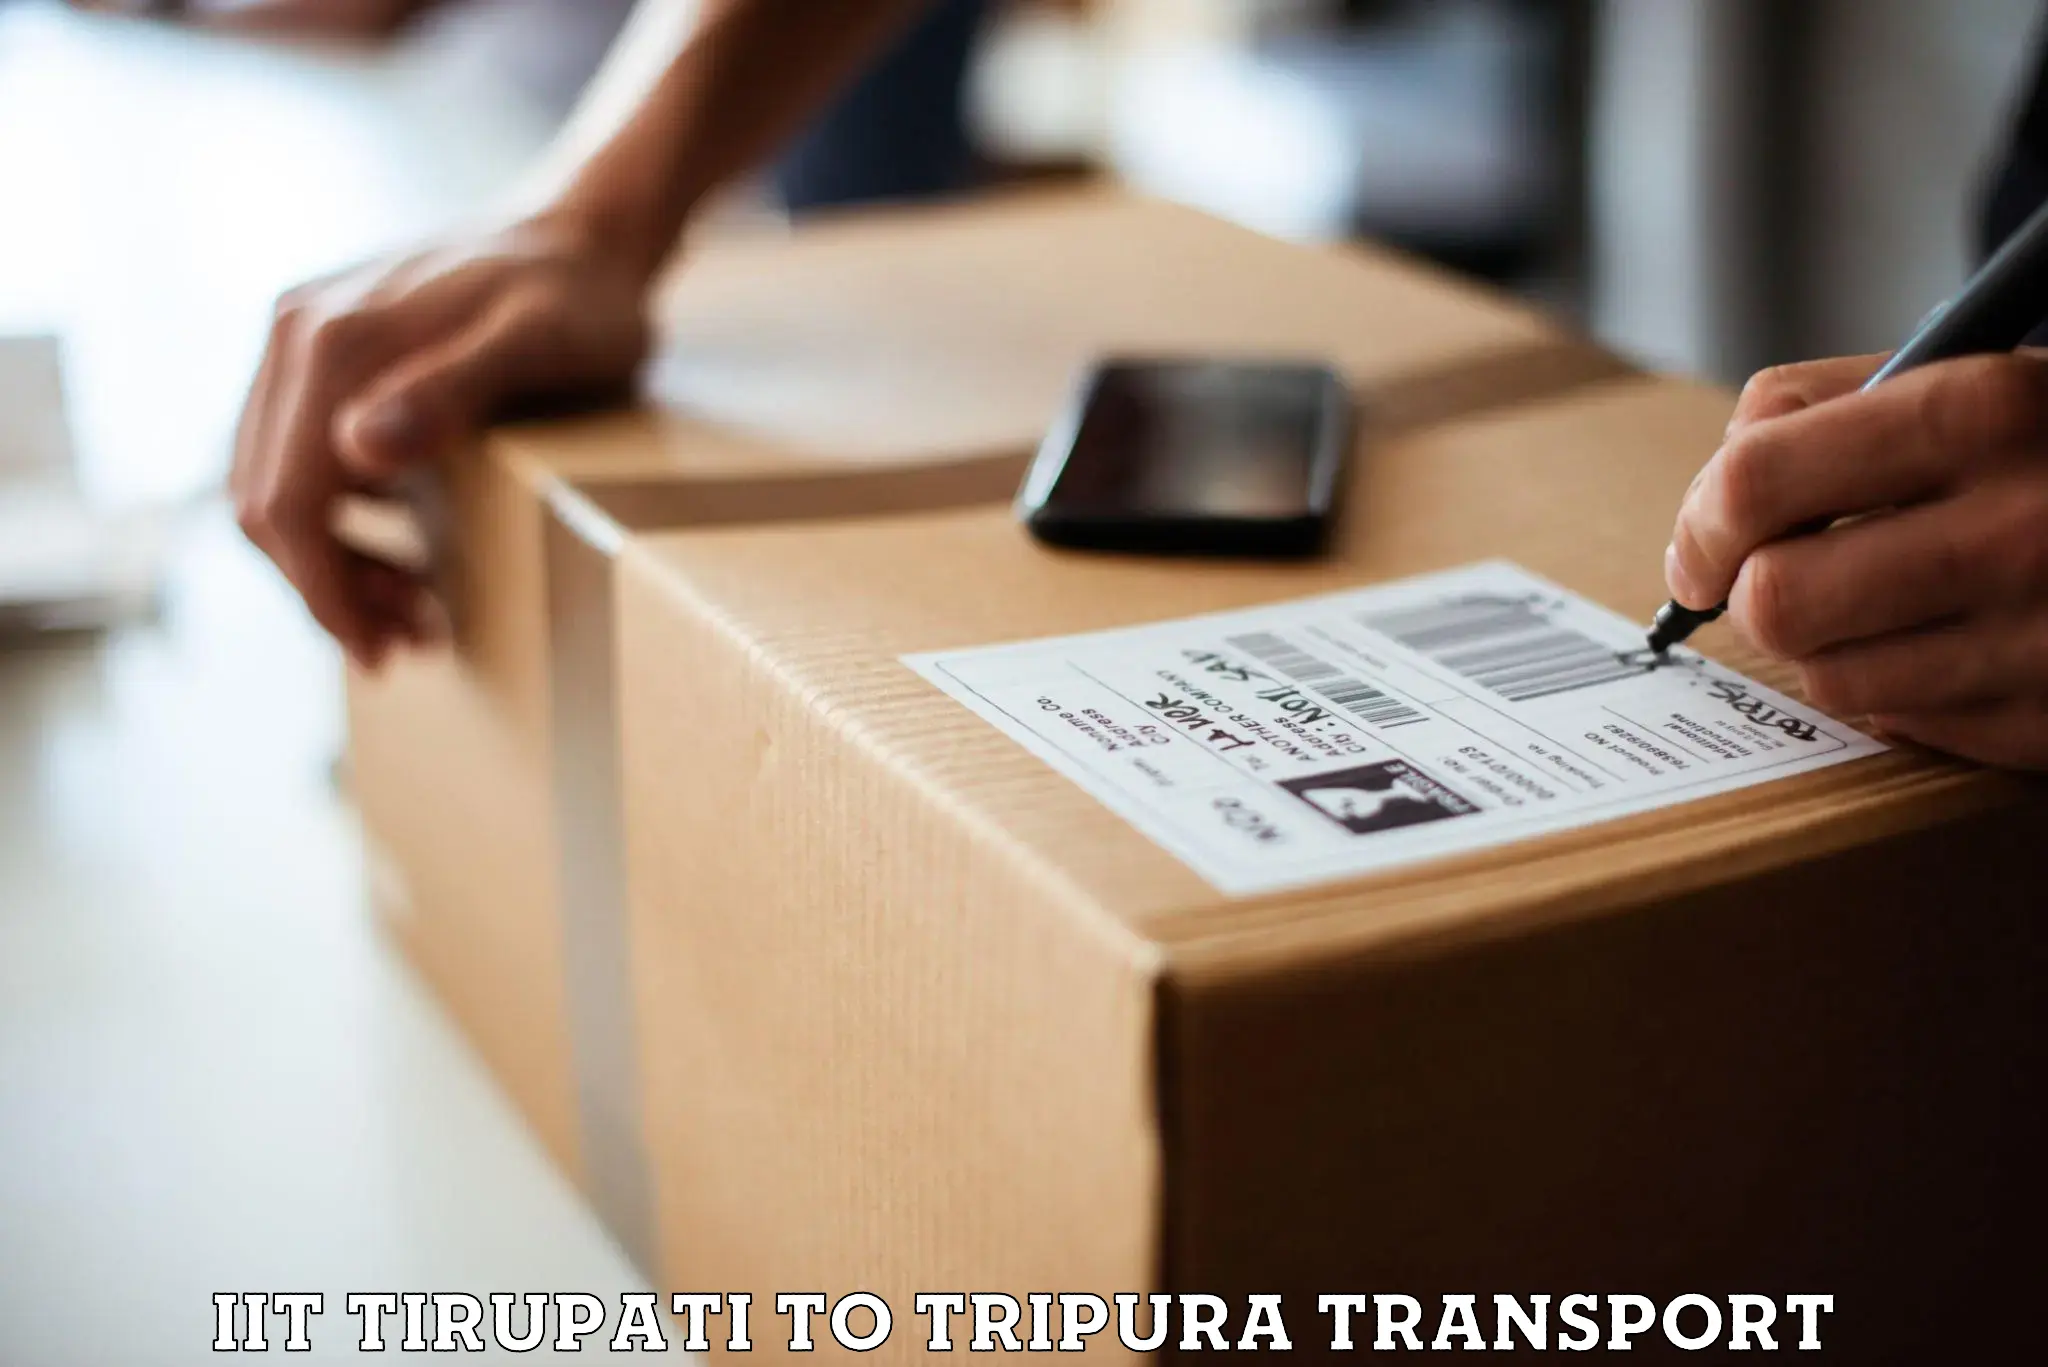 Furniture transport service IIT Tirupati to Dhalai